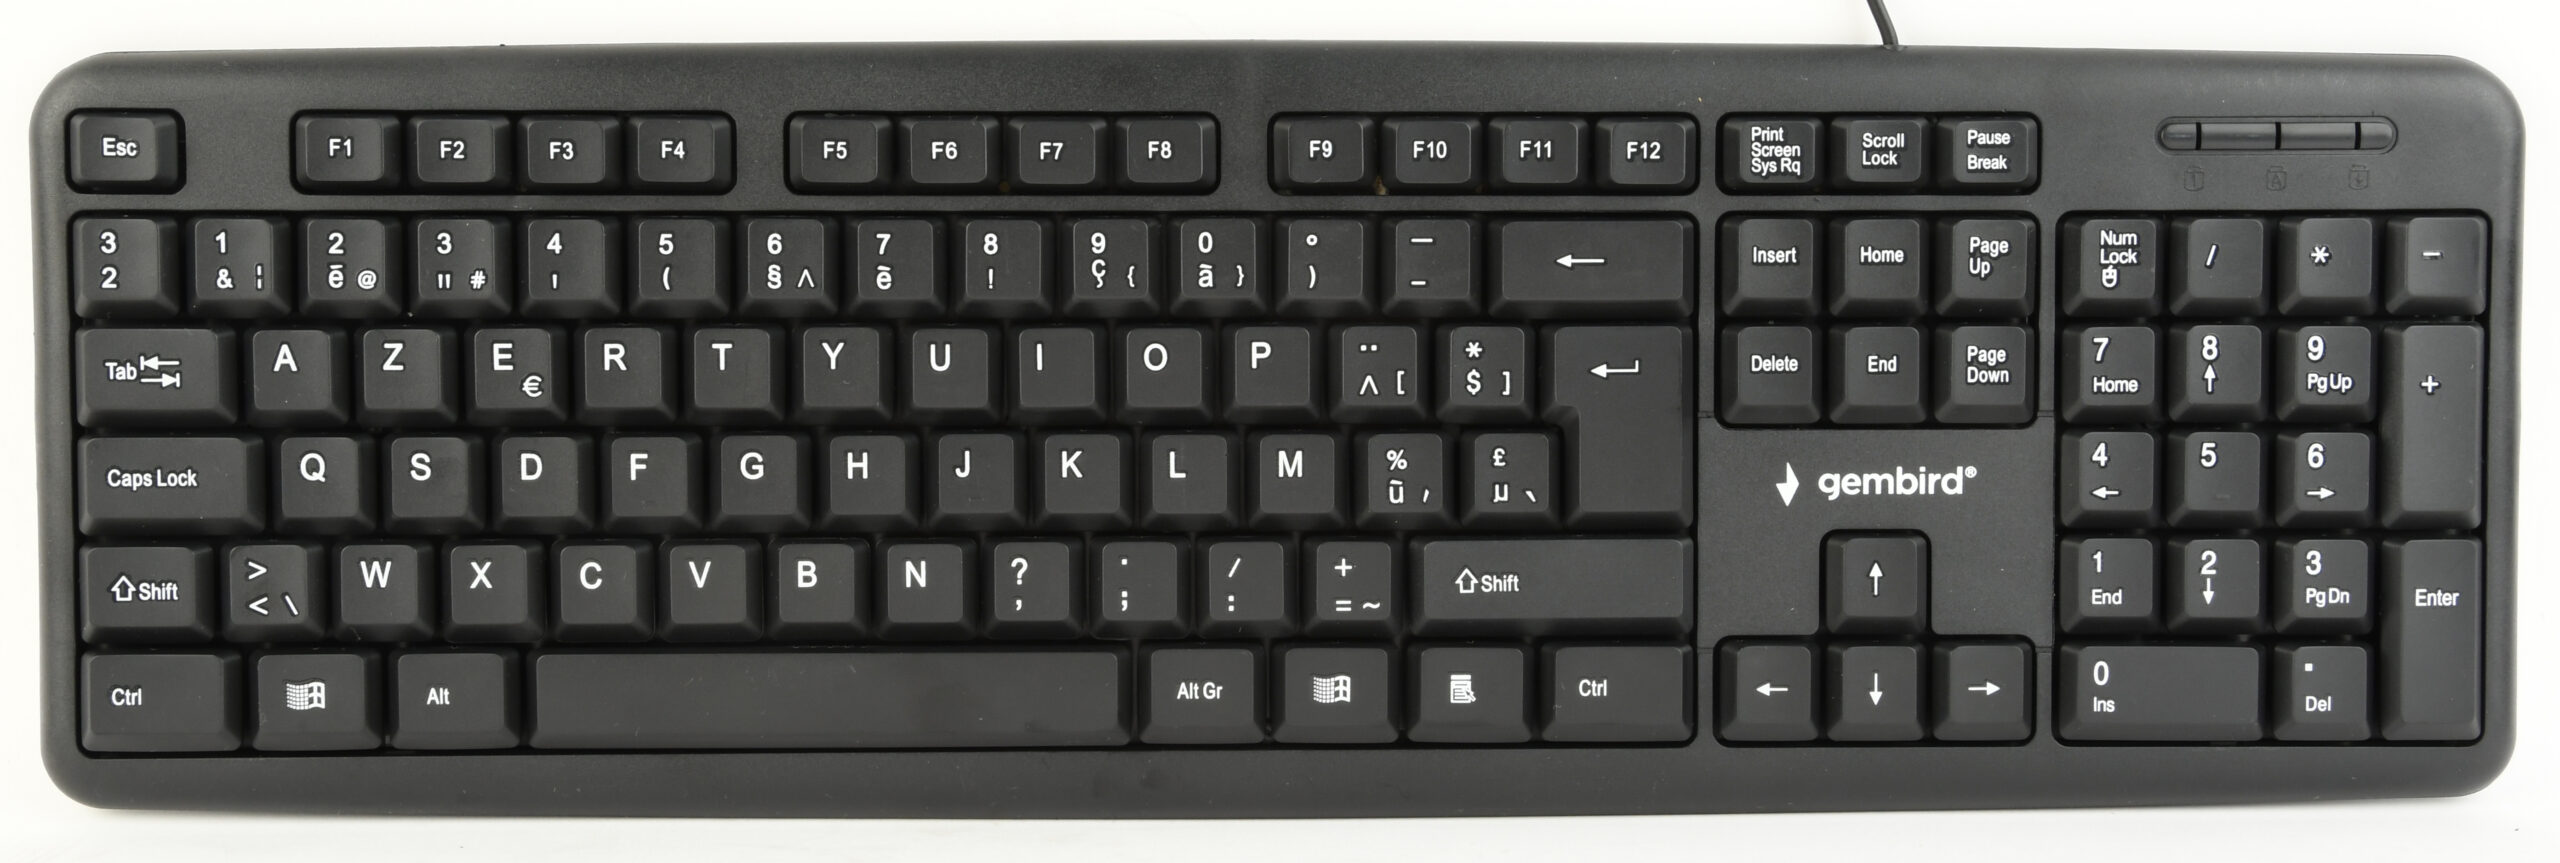 Standaard toetsenbord USB, Belgische layout